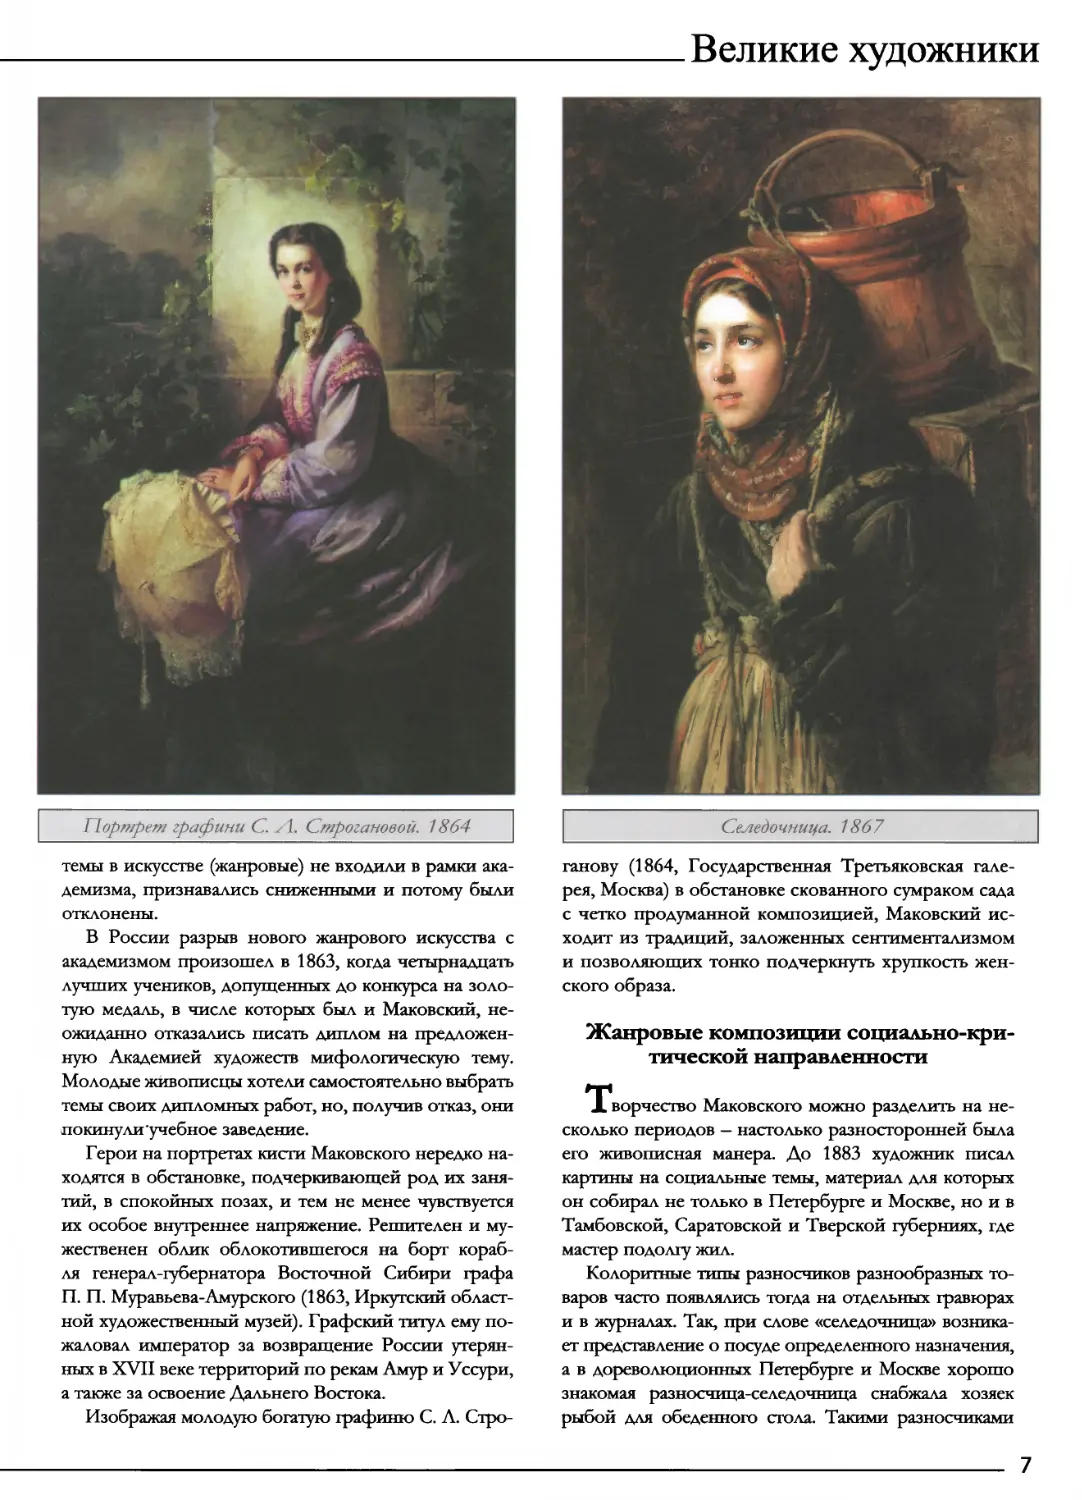 Жанровые композиции социально-критической направленности
Портрет графини С. Л. Строгановой. 1864
Селедочница. 1867